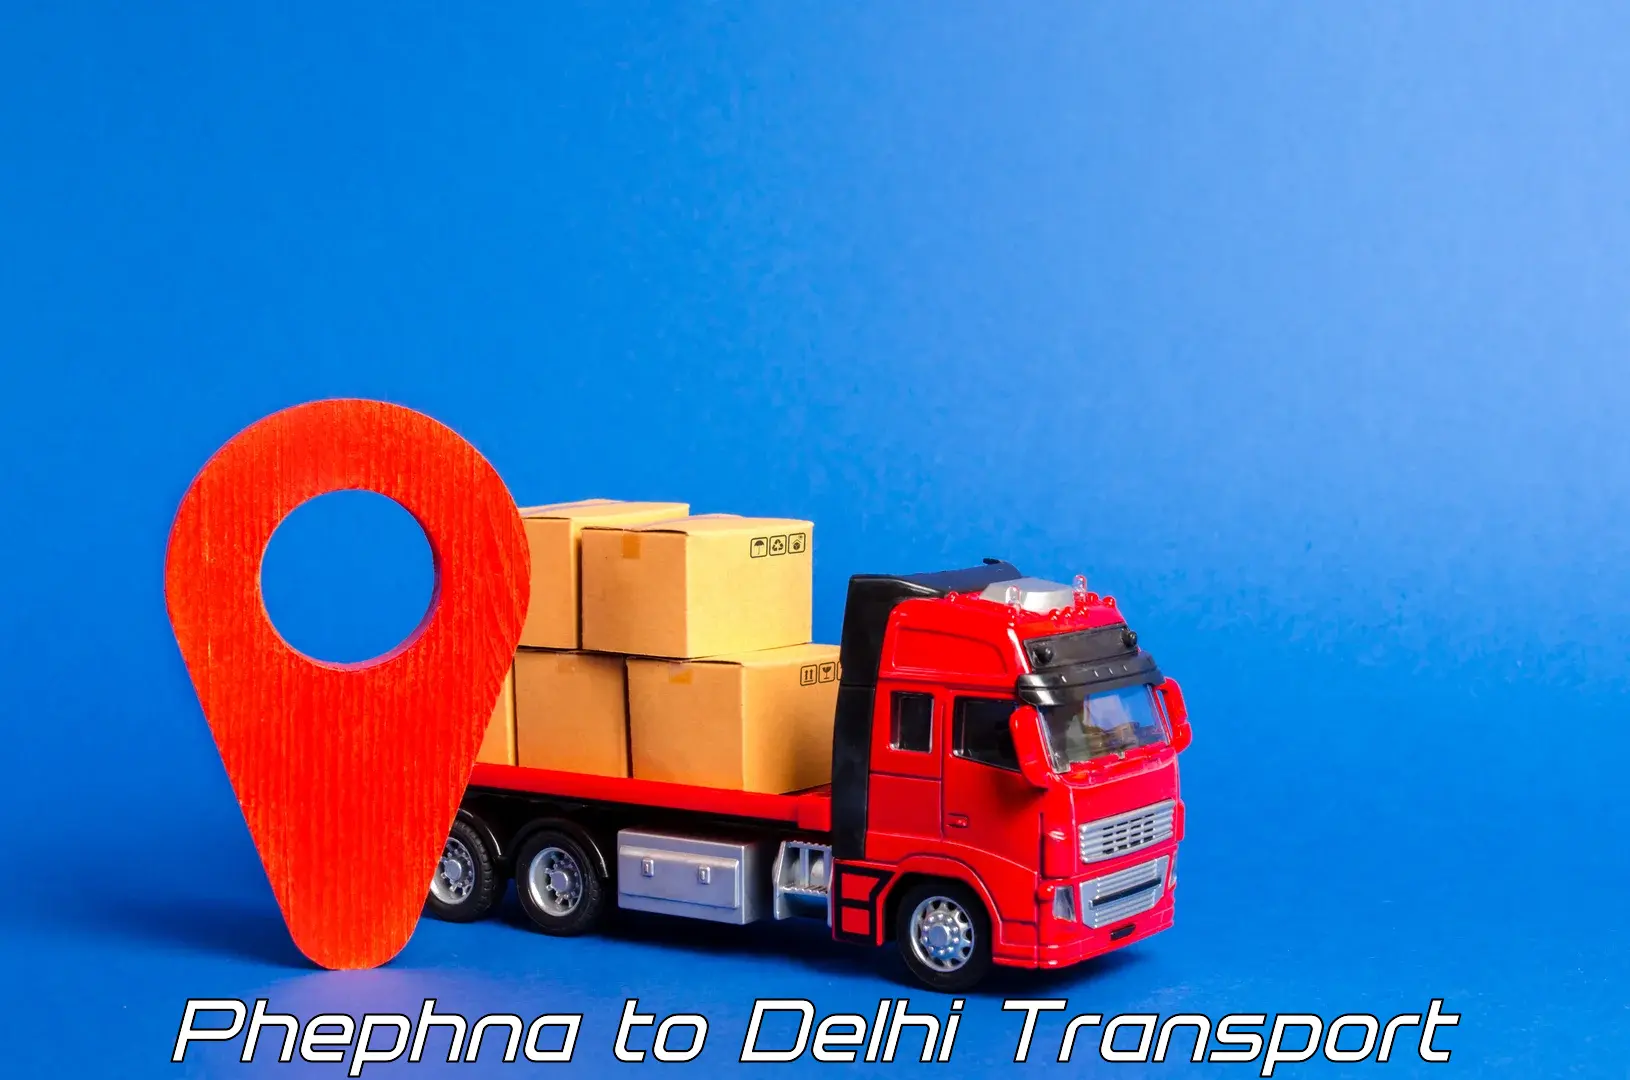 Air freight transport services Phephna to Jamia Millia Islamia New Delhi